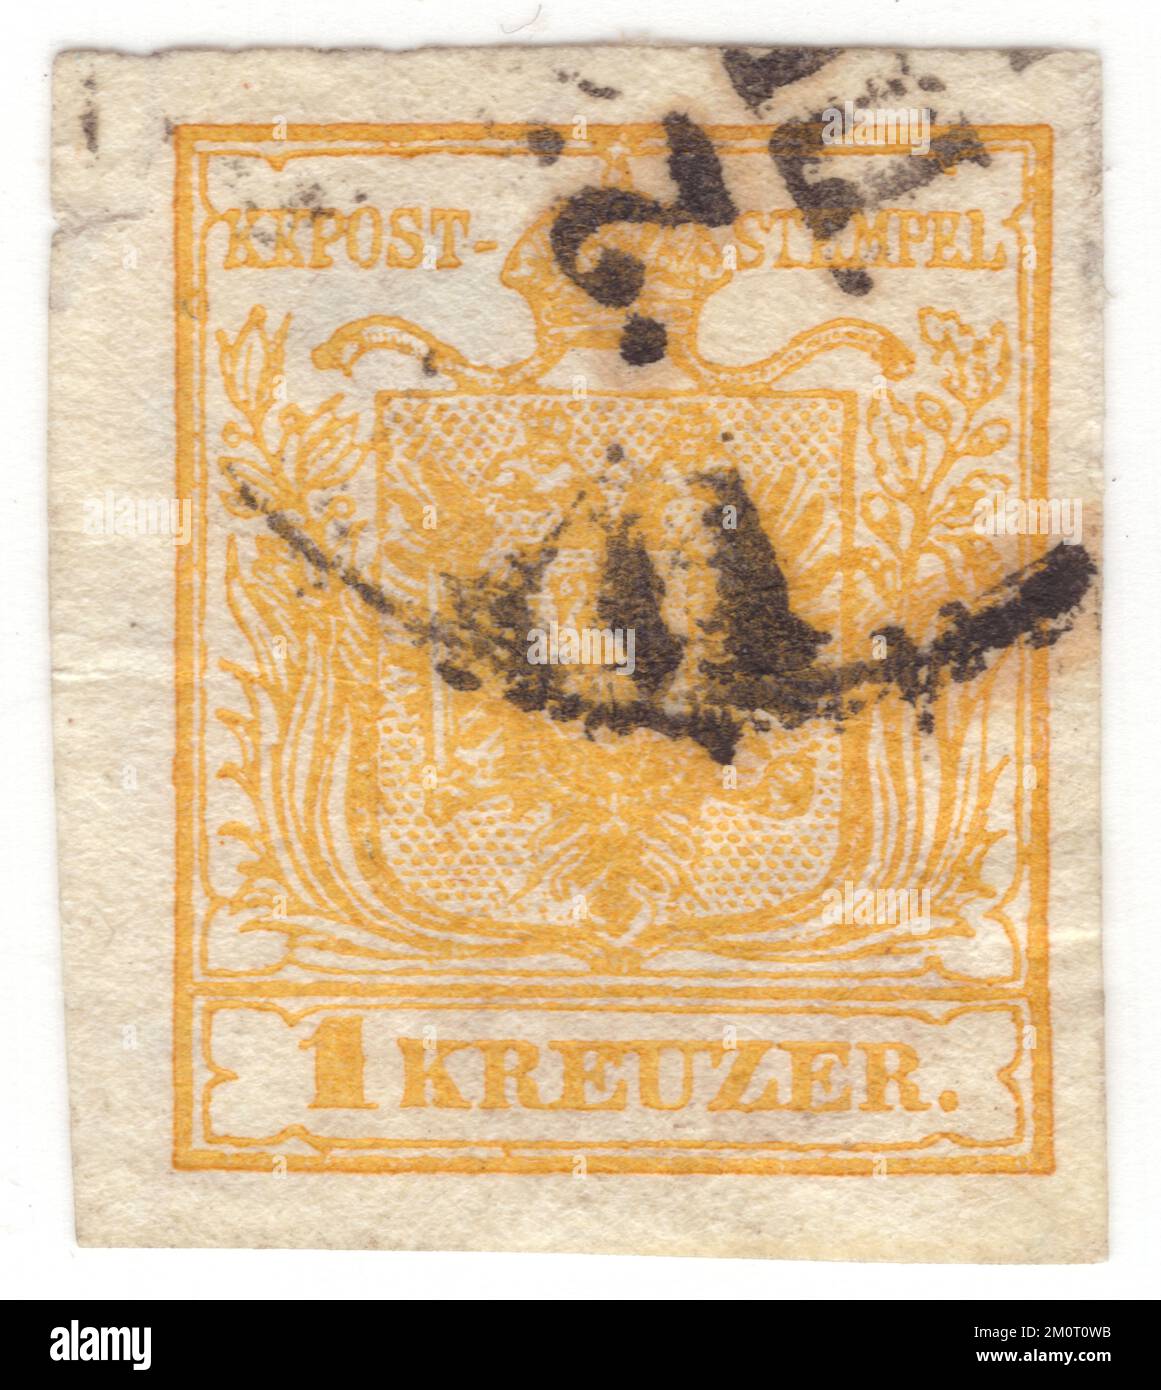 AUTRICHE — 1850 1 juin: Timbre-poste jaune kreuzer de 1 représentant les armoiries de la monarchie autrichienne. Le premier numéro de la monarchie autrichienne (y compris la Hongrie) des timbres-poste. Le premier numéro de timbre-poste de l'Empire d'Autriche était une série de timbres typographiques imperméables mettant en vedette les armoiries. Au début, ils ont été imprimés sur un papier brut fait à la main, mais après 1854, un papier lisse fait à la machine a été utilisé à la place. Les timbres de l'Empire autrichien ont été émis pour la première fois sur 1 juin 1850: Un blason sous le texte KK Post-Stempel Banque D'Images